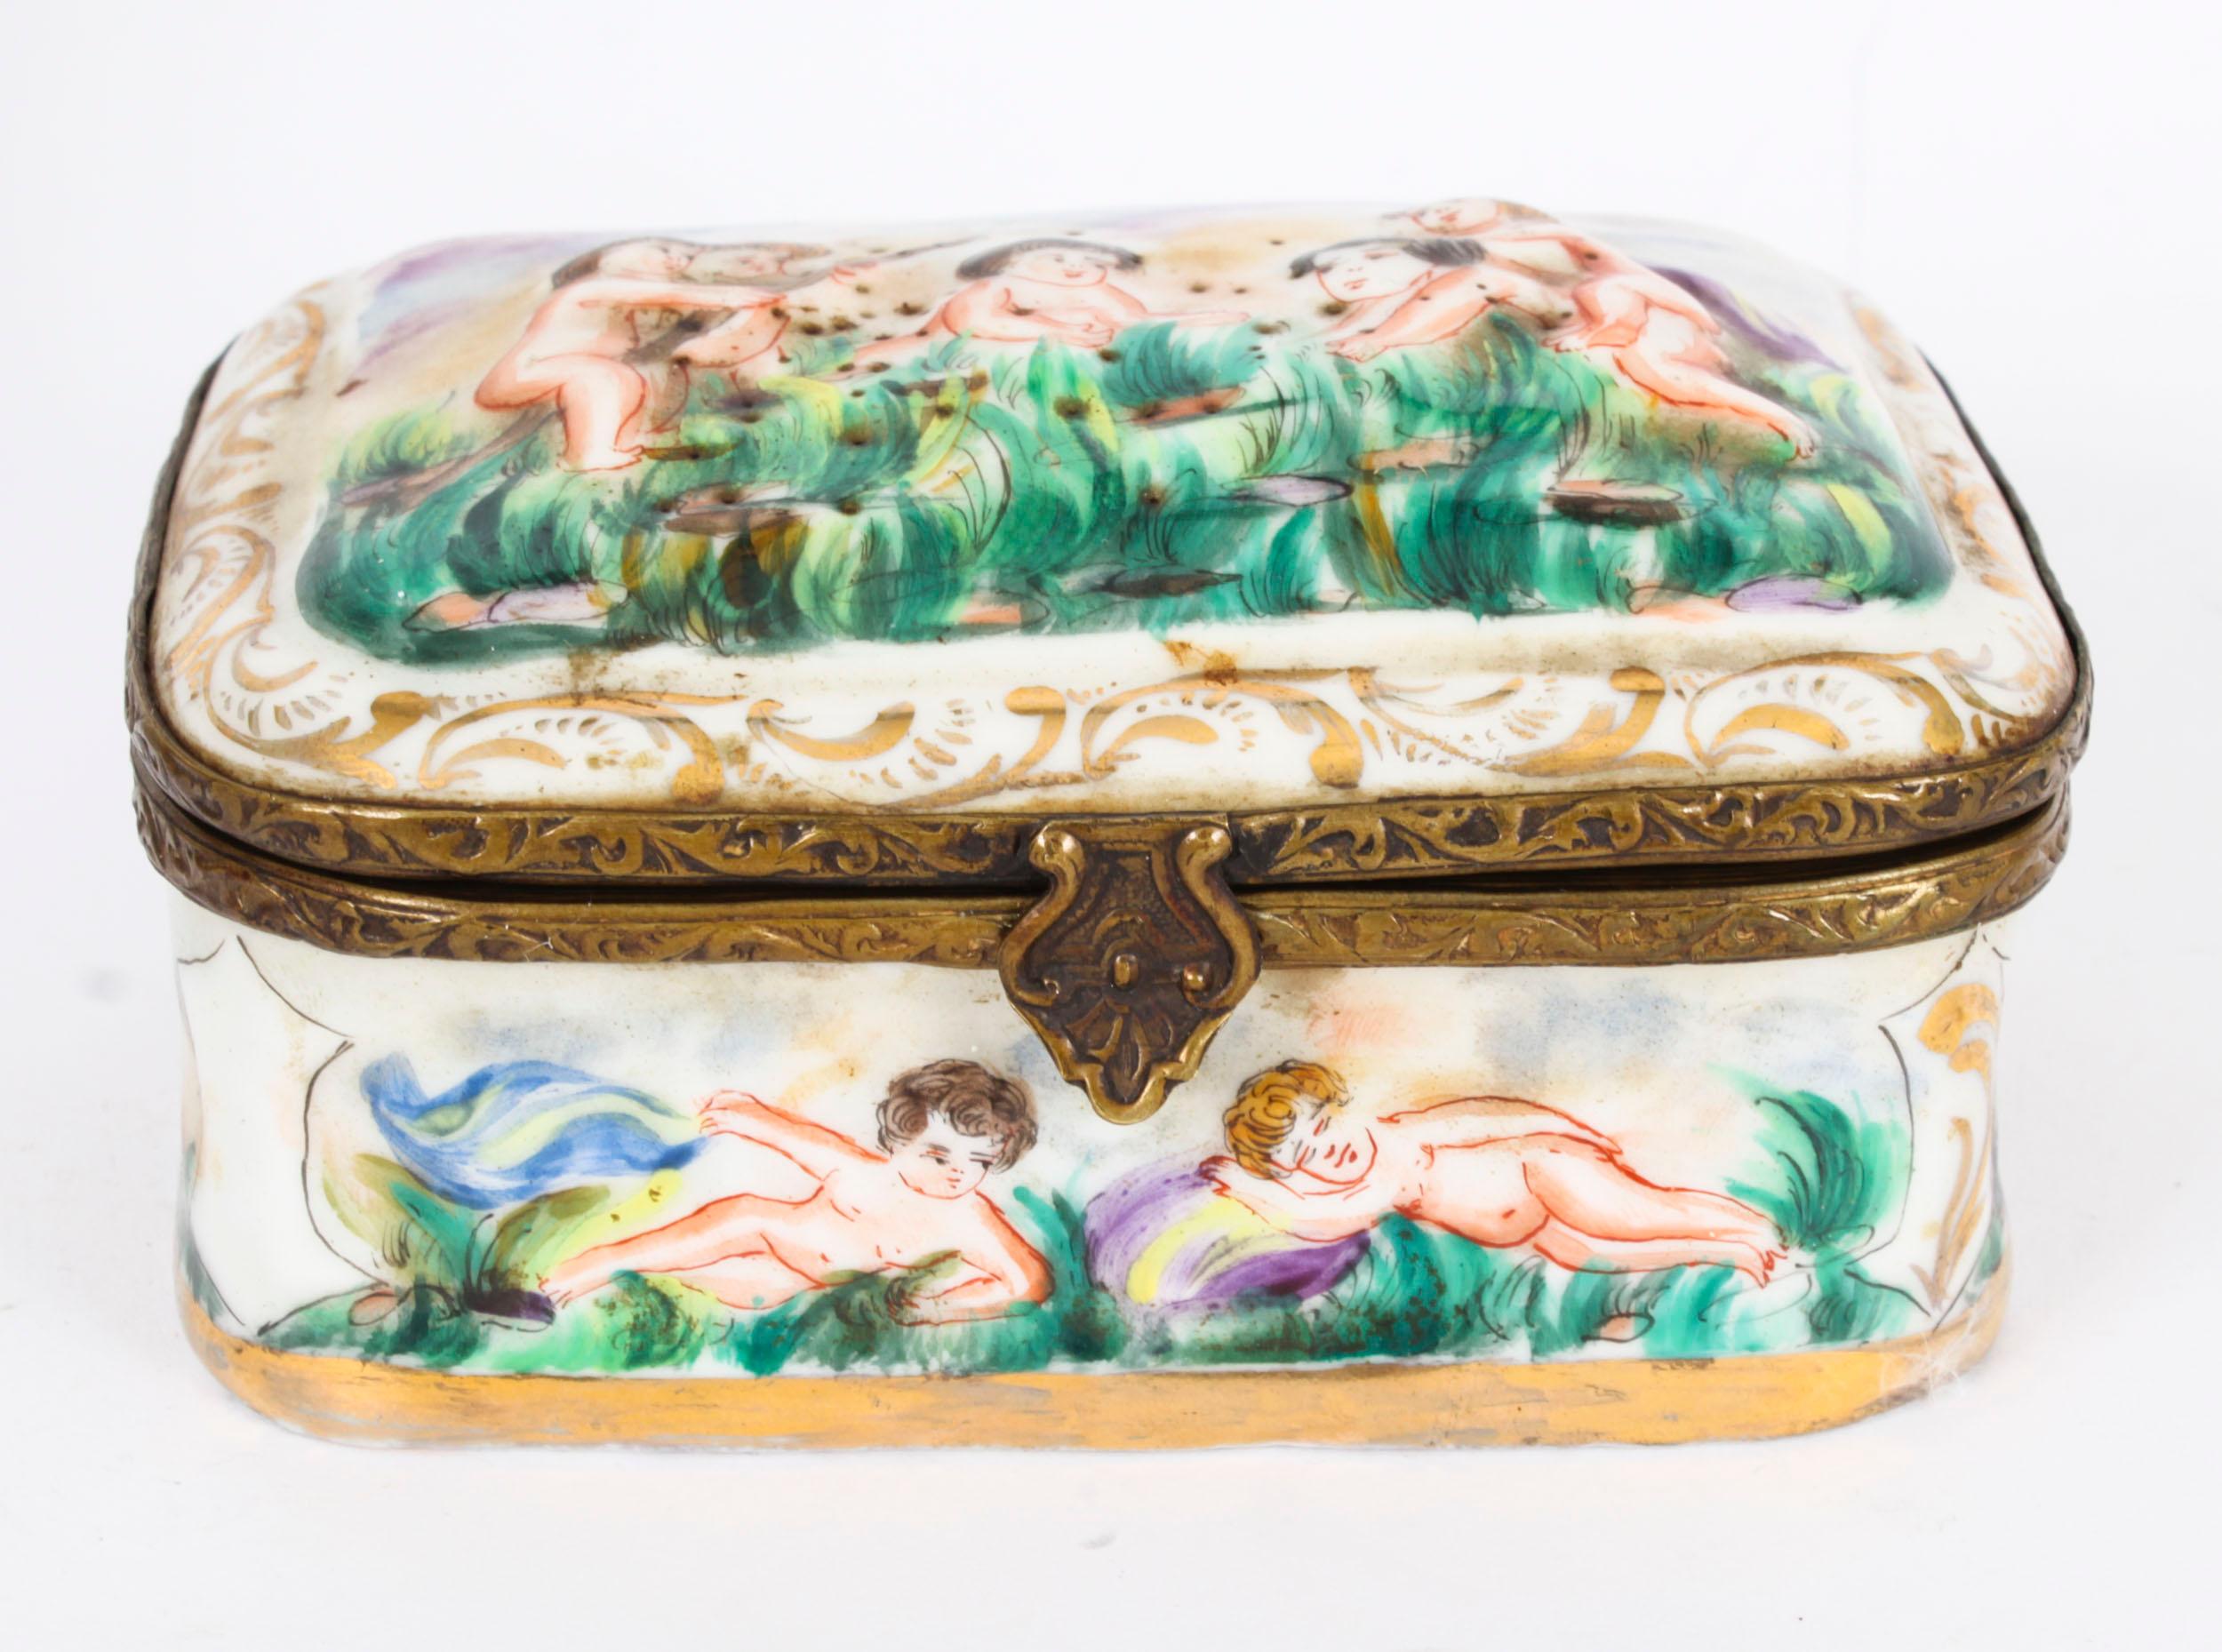 Voici une belle porcelaine italienne ancienne de Capodimonte.  cercueil, datant de la fin du 19e siècle.

La boîte et le couvercle sont superbement décorés en relief de scènes classiques, et le couvercle et la base sont ornés de montures décoratives